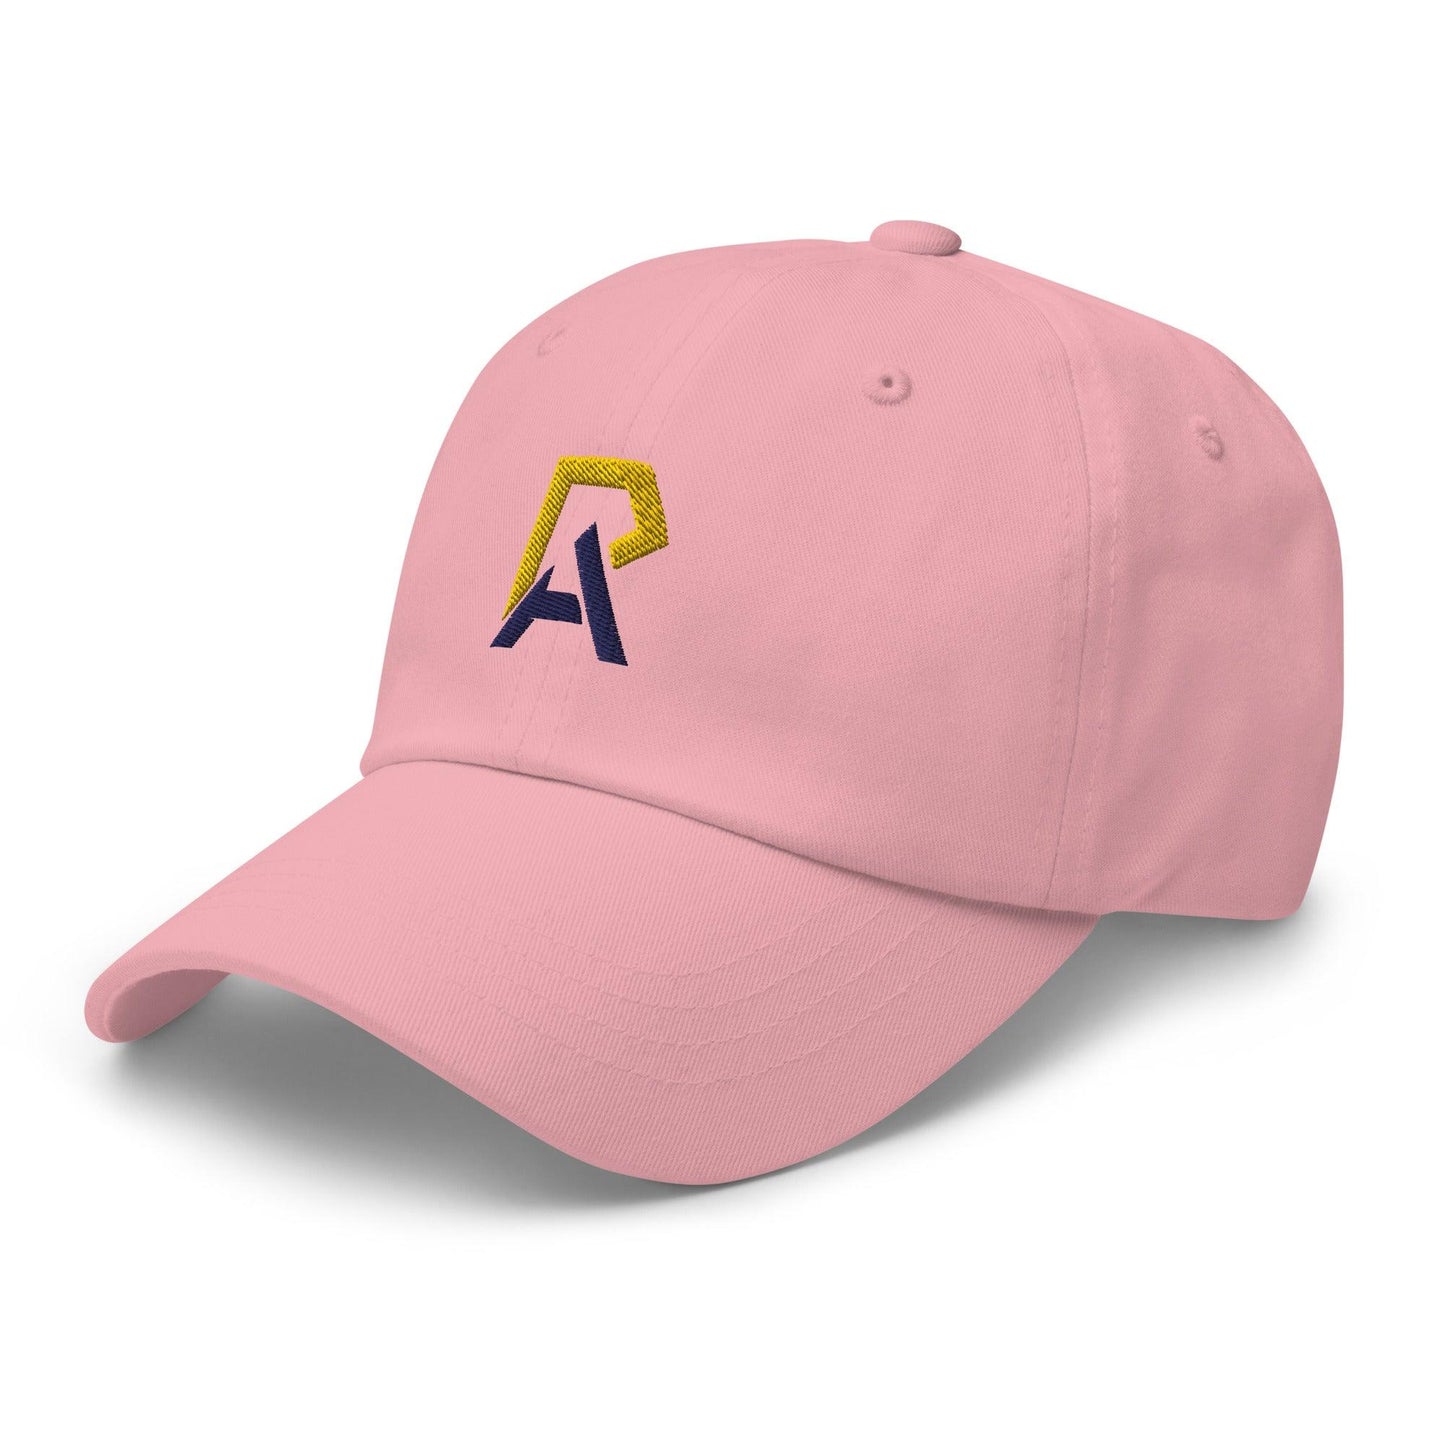 Andrea Riley "Elite" hat - Fan Arch